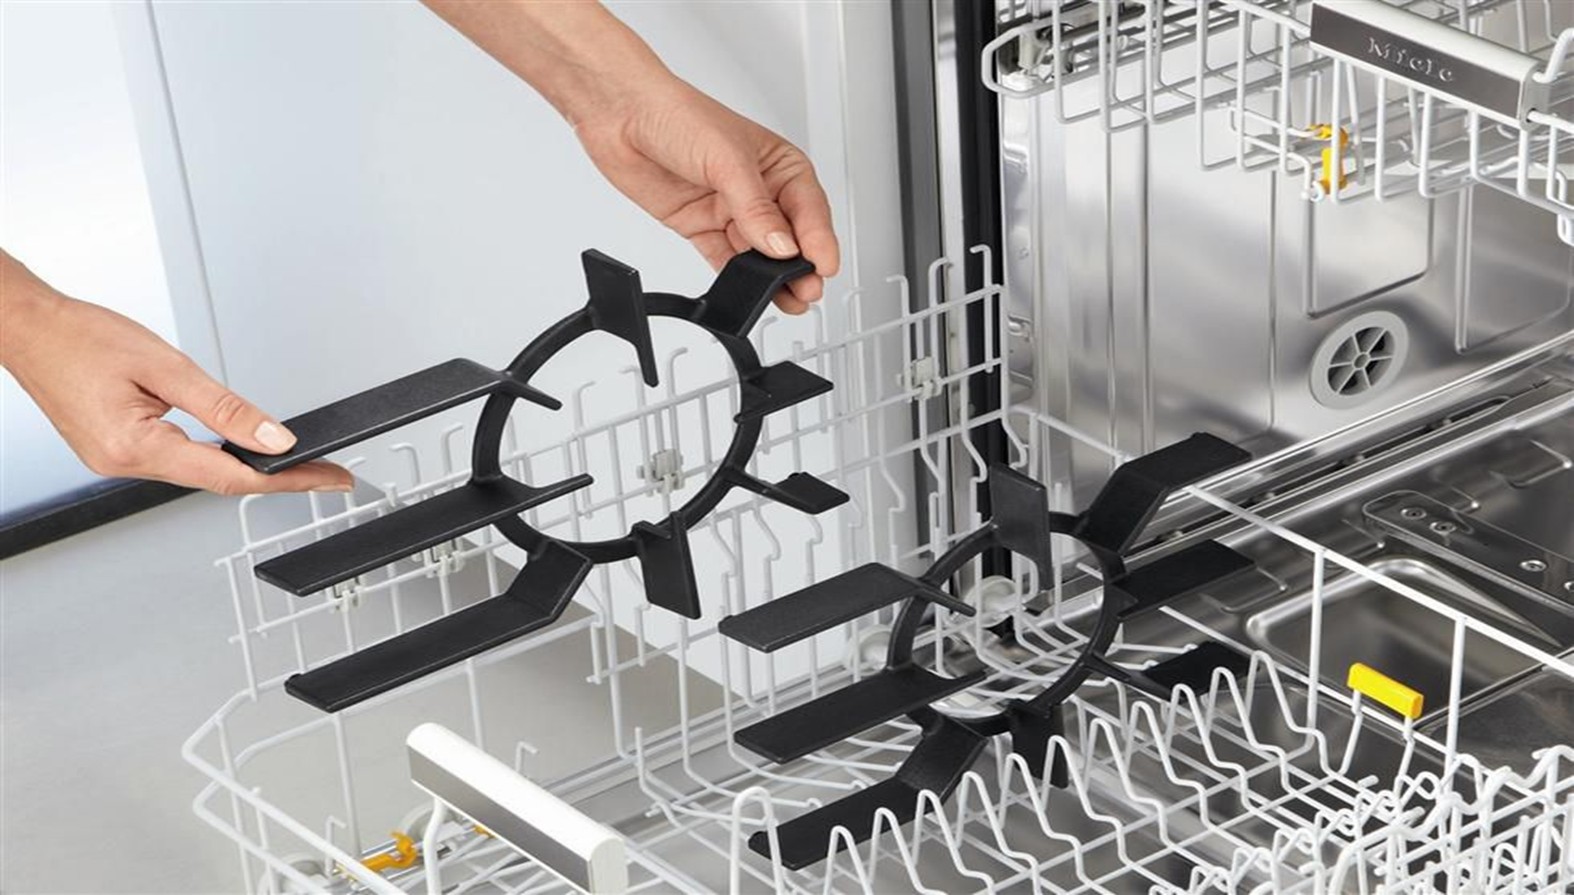 Можно ли в посудомойке мыть пластиковые контейнеры – определяем по символам на дне и внешнему виду посуды